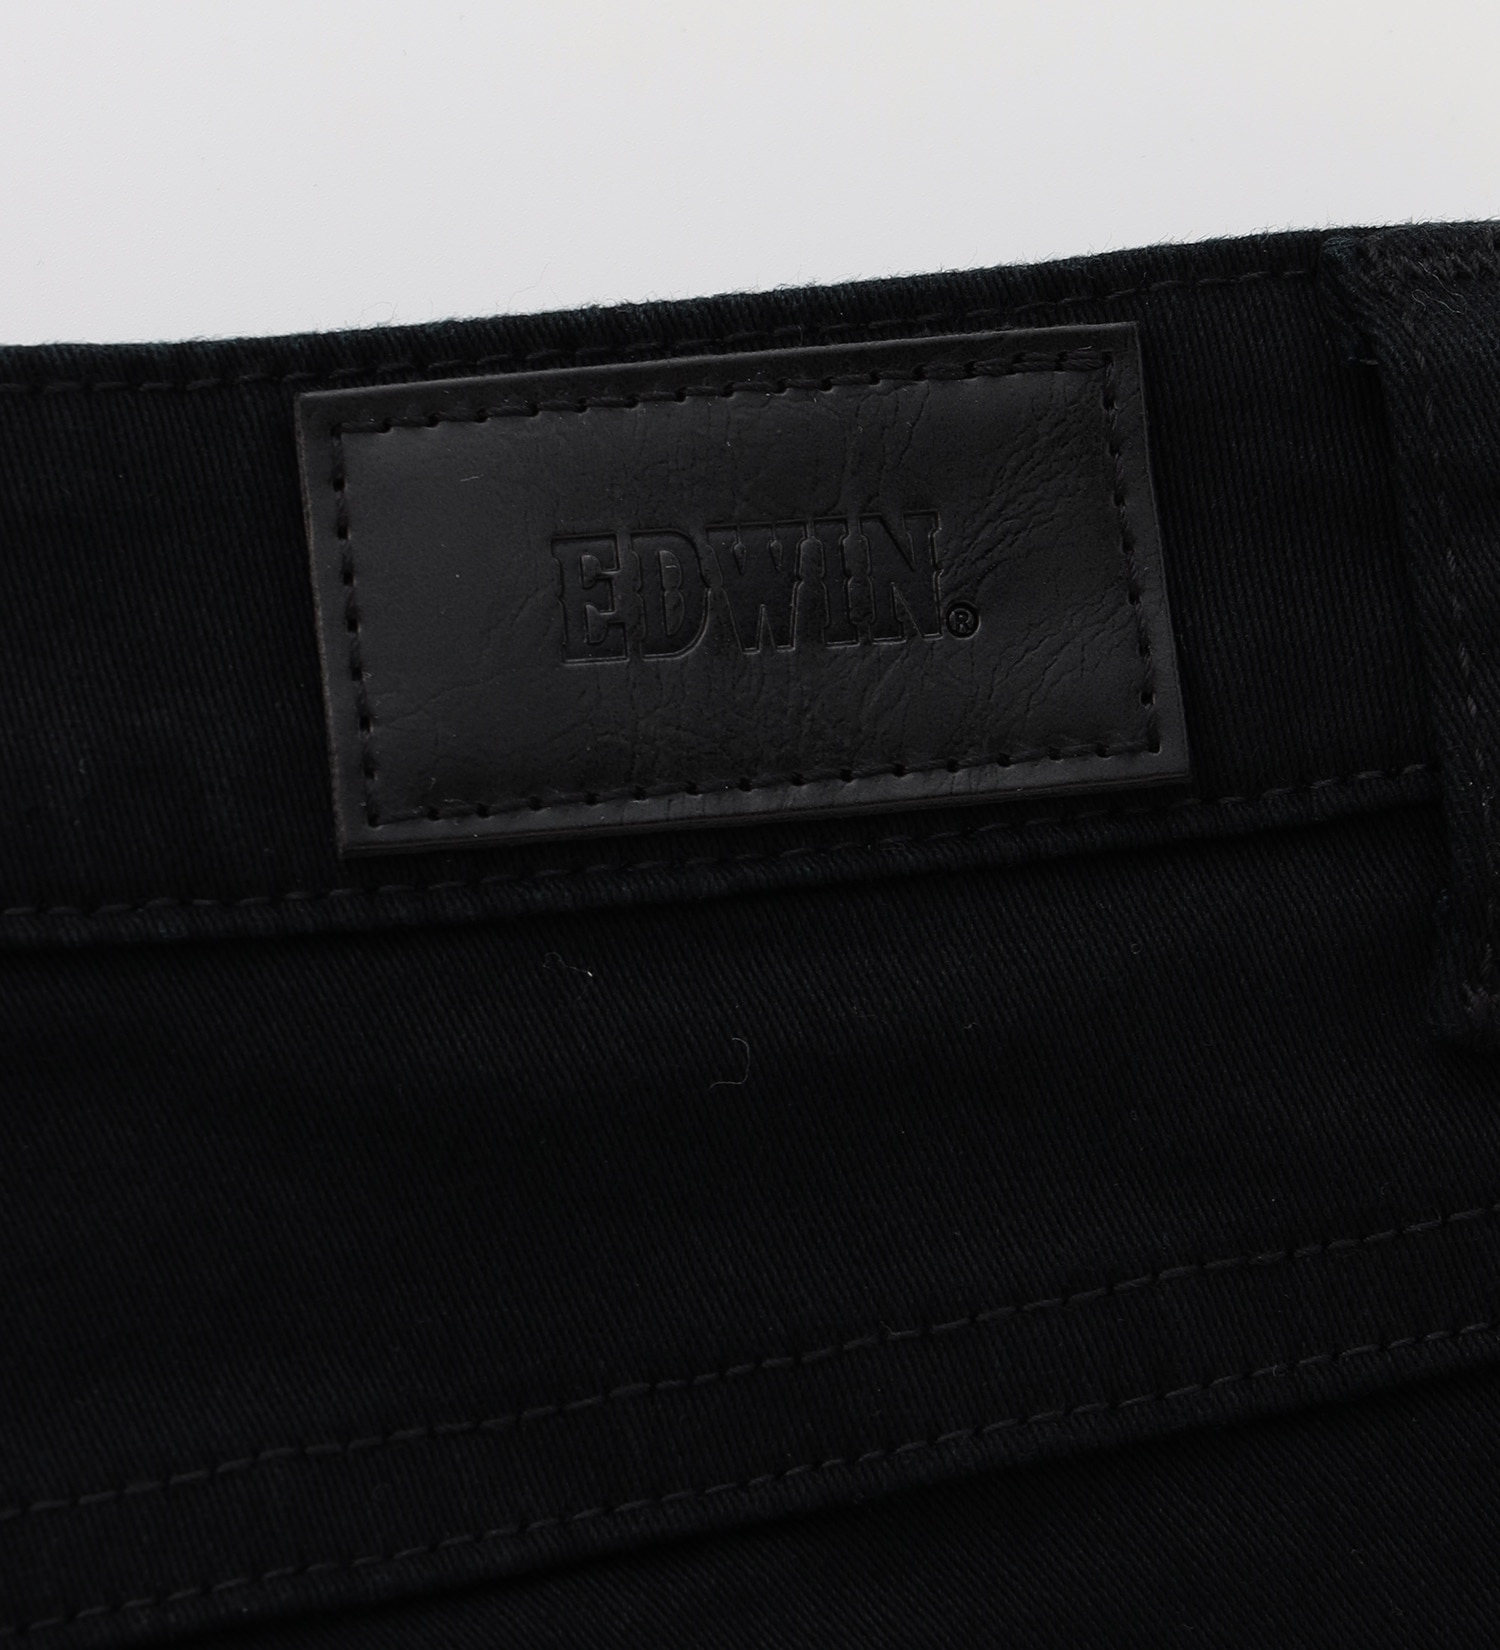 EDWIN(エドウイン)のEDWIN フレアーパンツ【アウトレット店舗・WEB限定】|パンツ/パンツ/レディース|ブラック